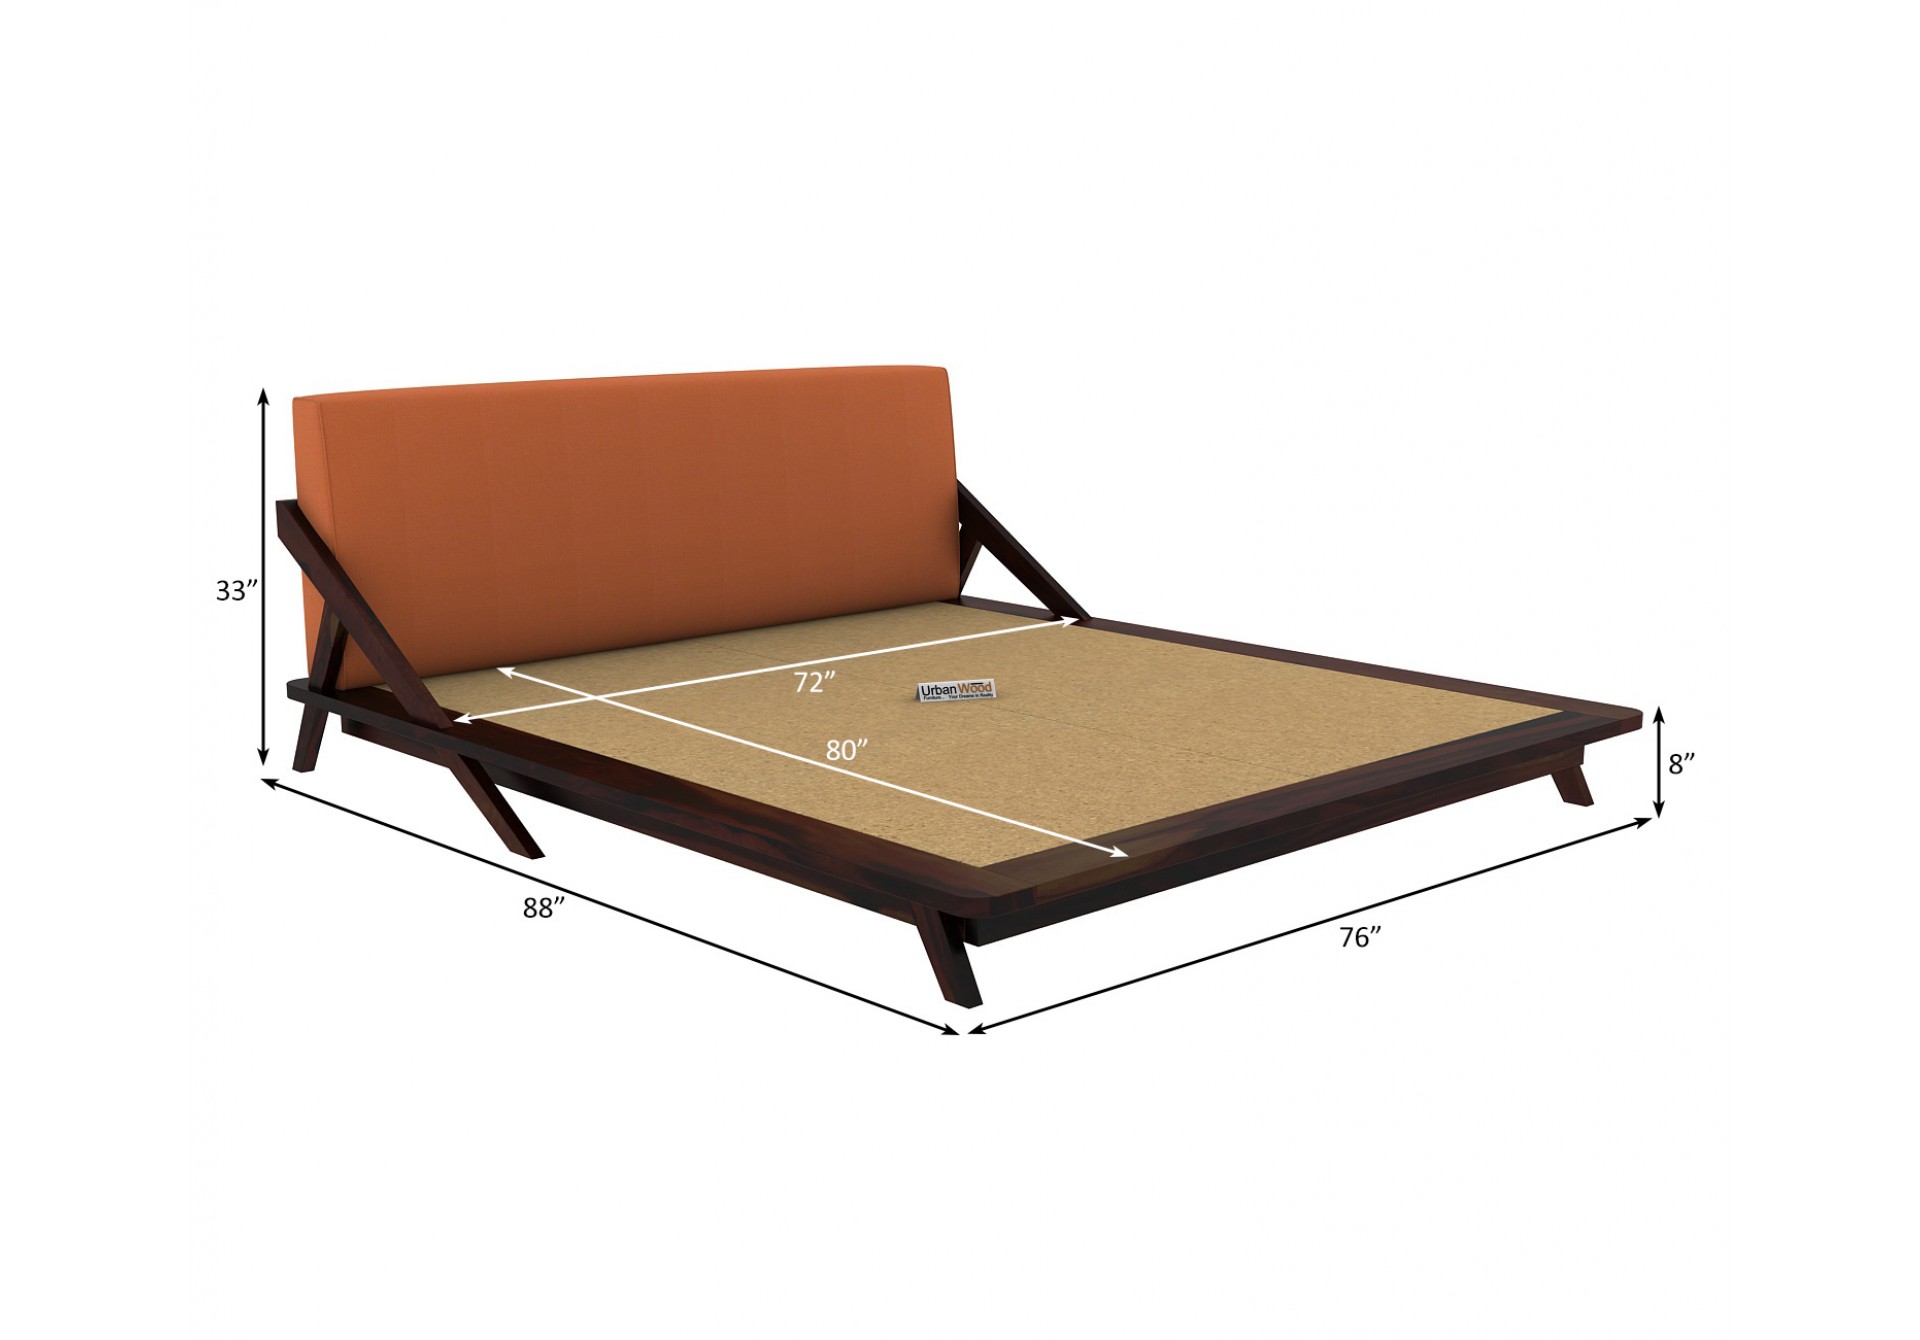 Jordan Low Floor Double Bed ( King Size, Walnut Finish )